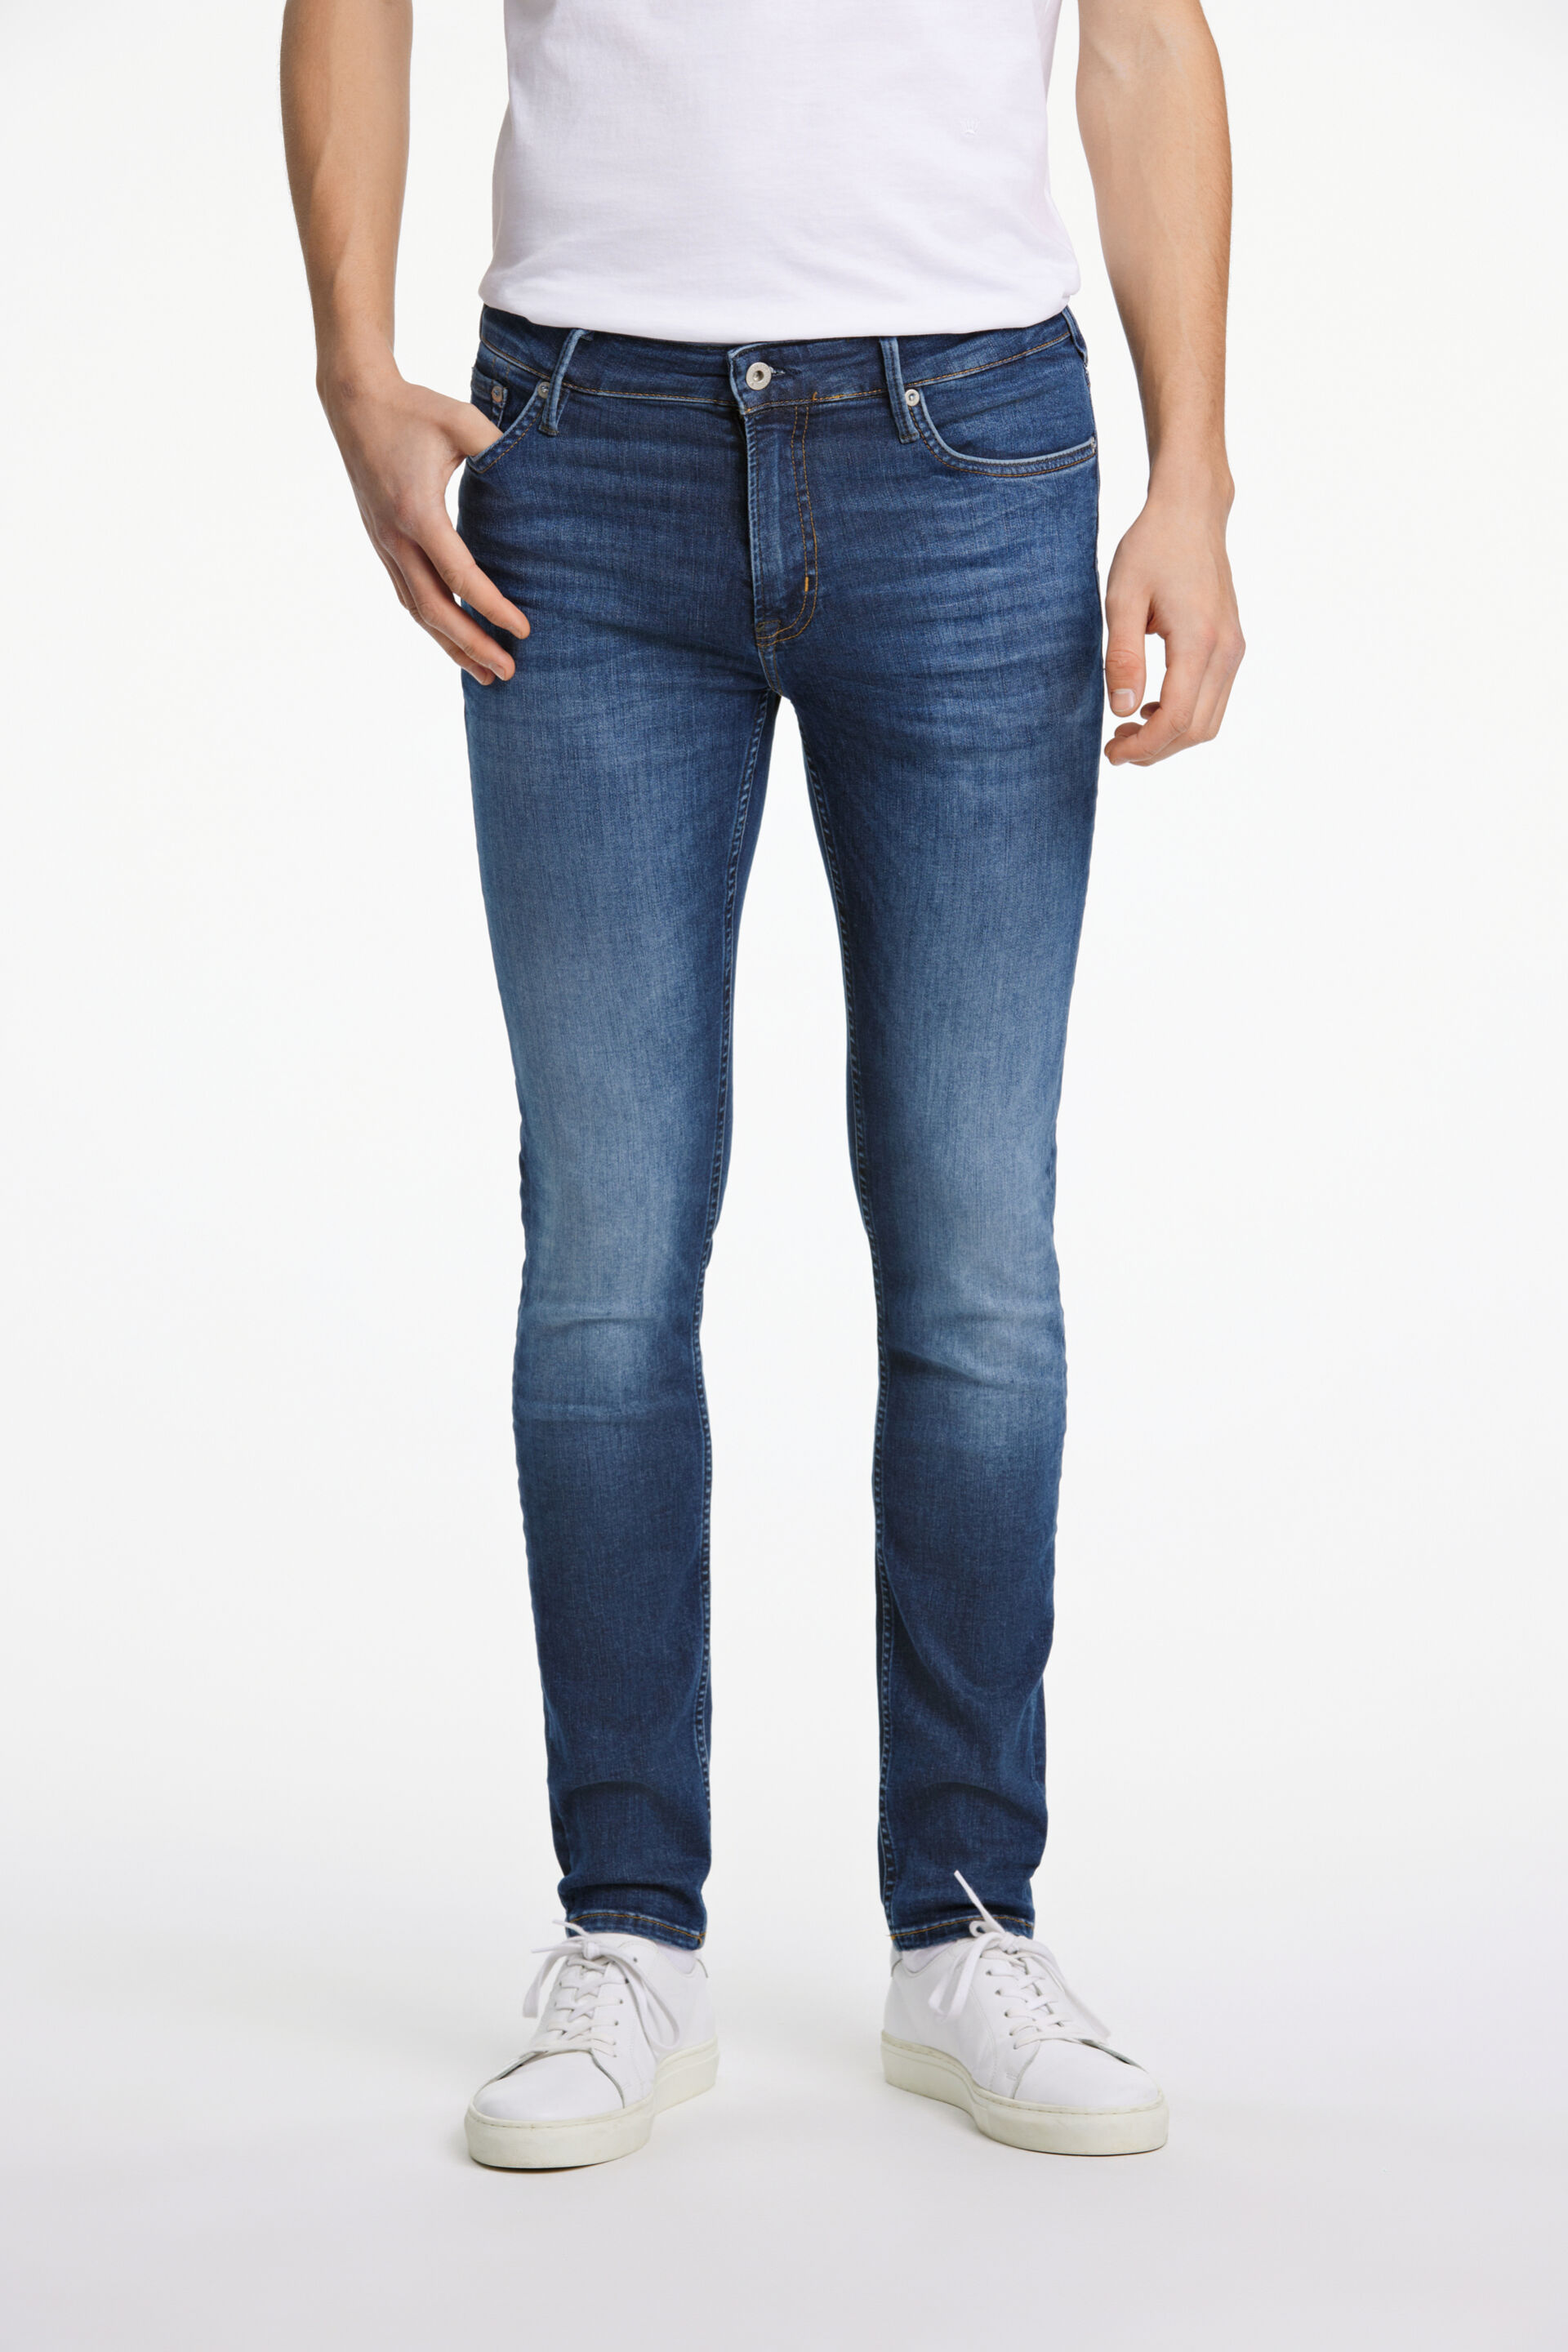 Junk de Luxe  Jeans 60-021002